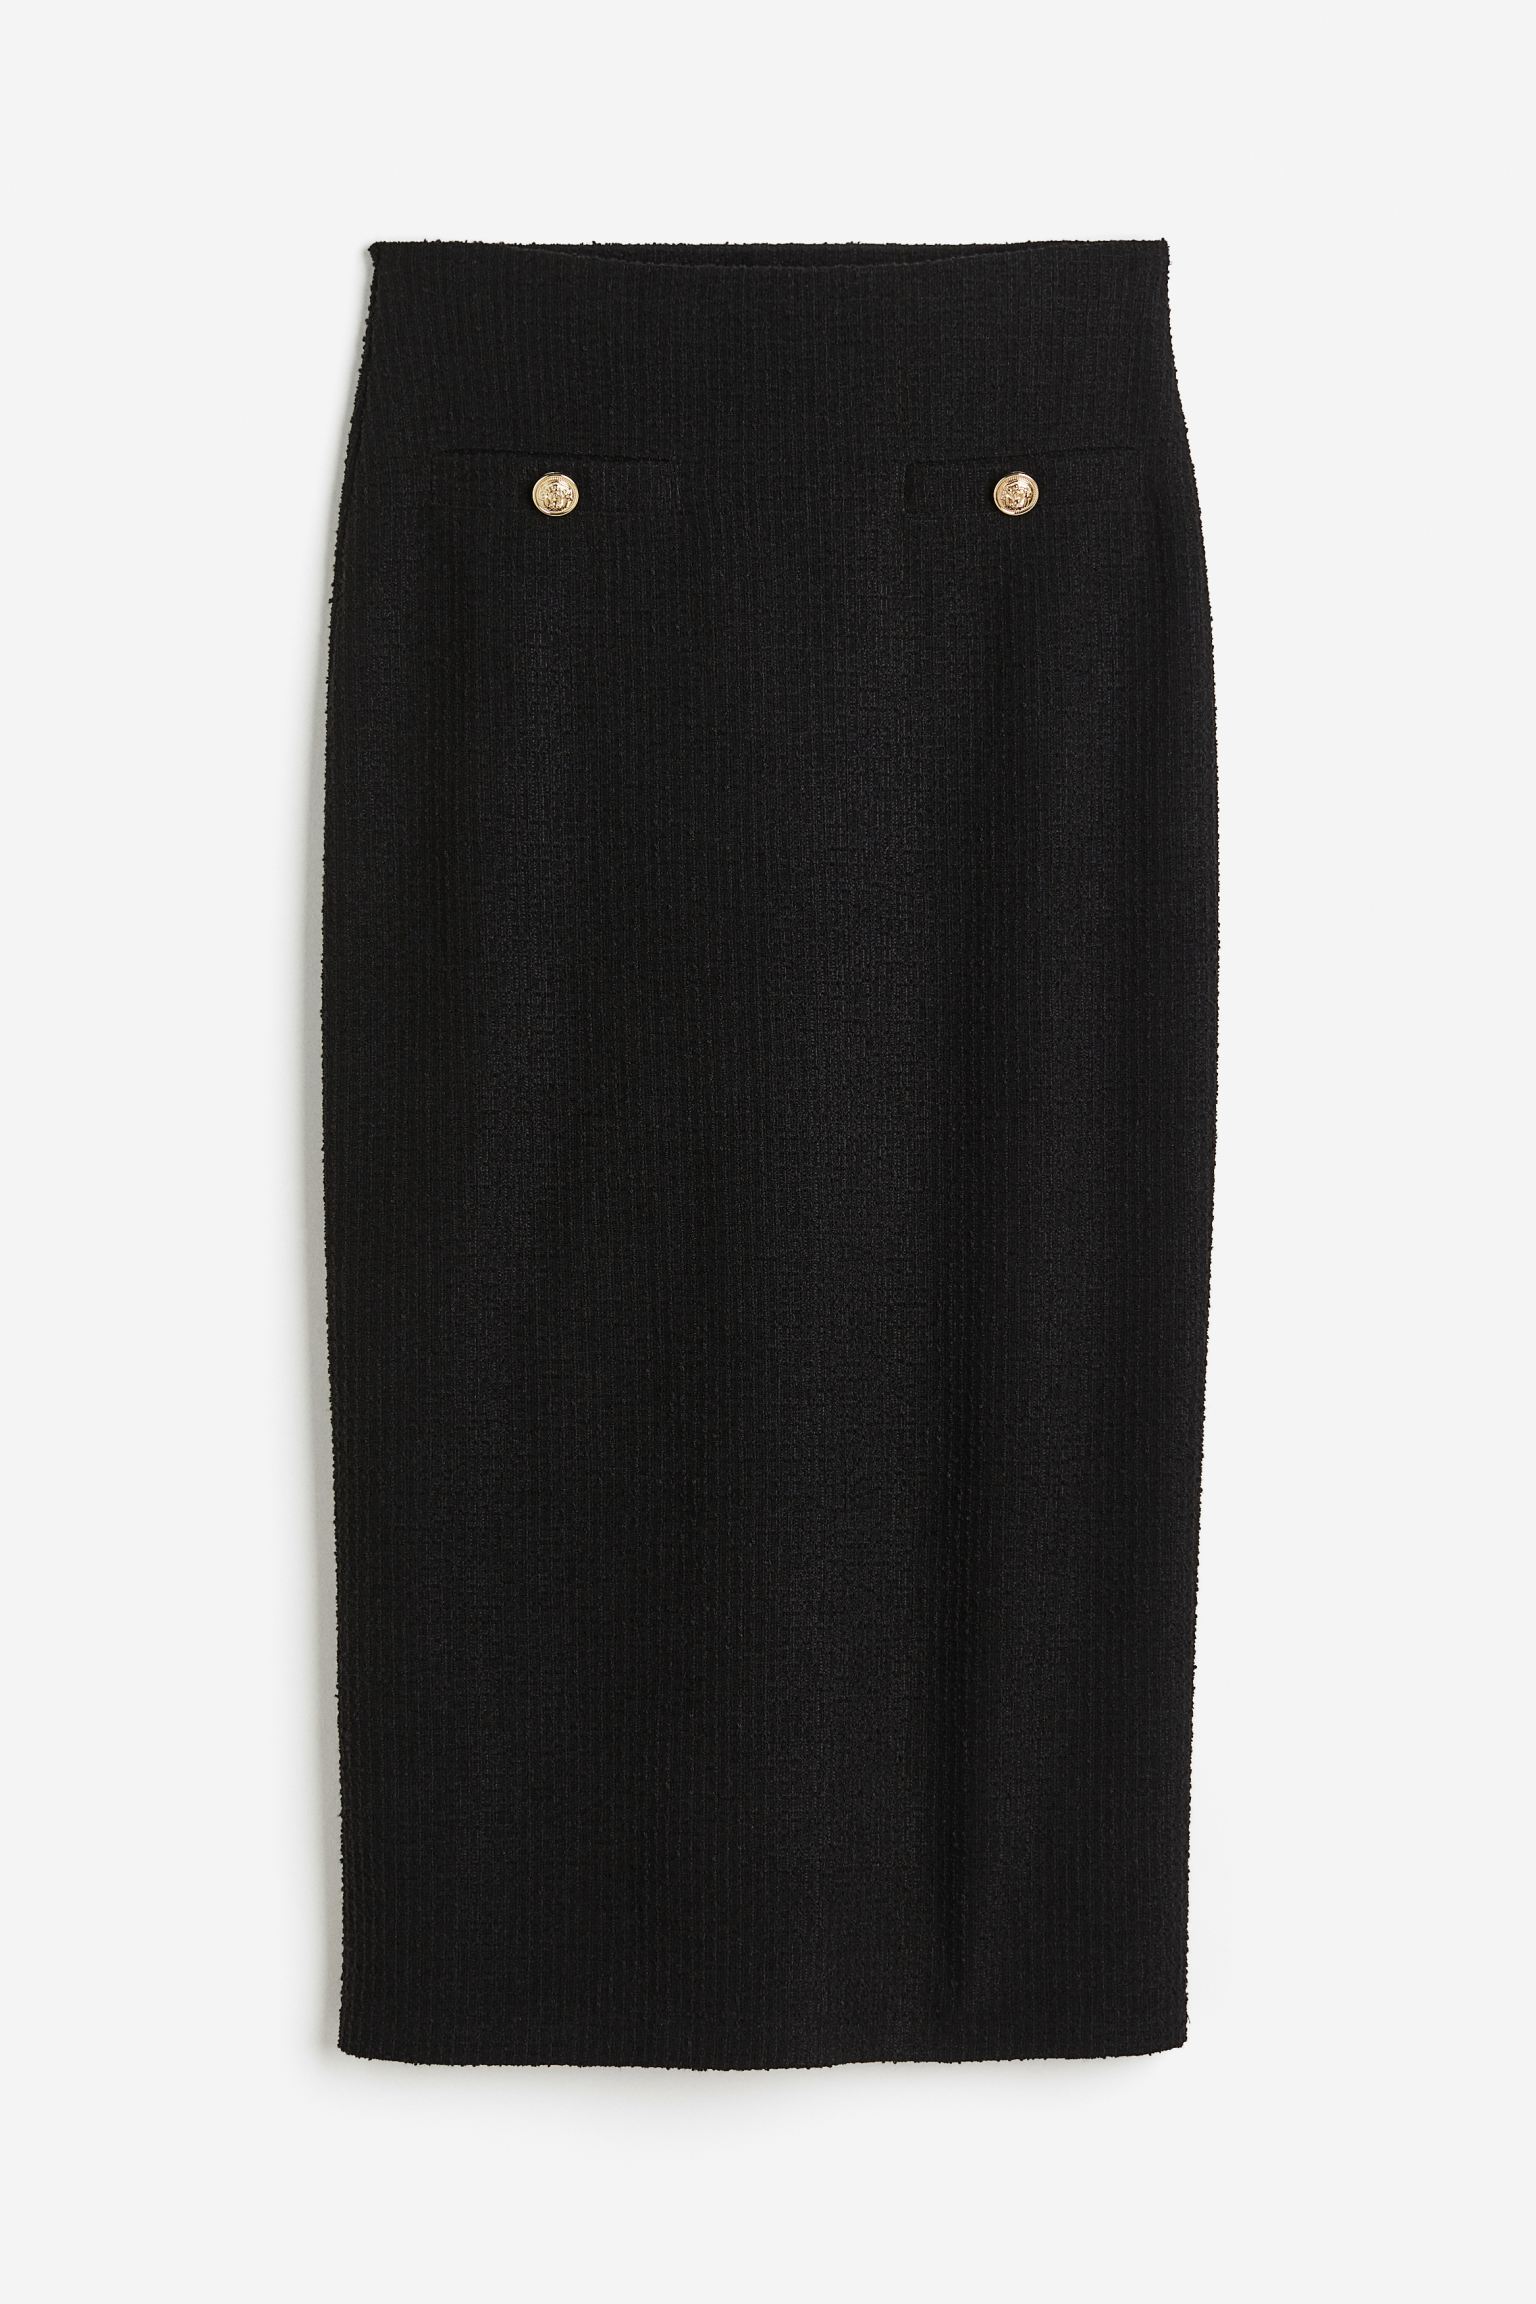 Юбка H&M Textured Pencil, черный юбка карандаш женская до колен пикантная офисная облегающая замшевая повседневная юбка с завышенной талией с разрезом сзади облегающая м